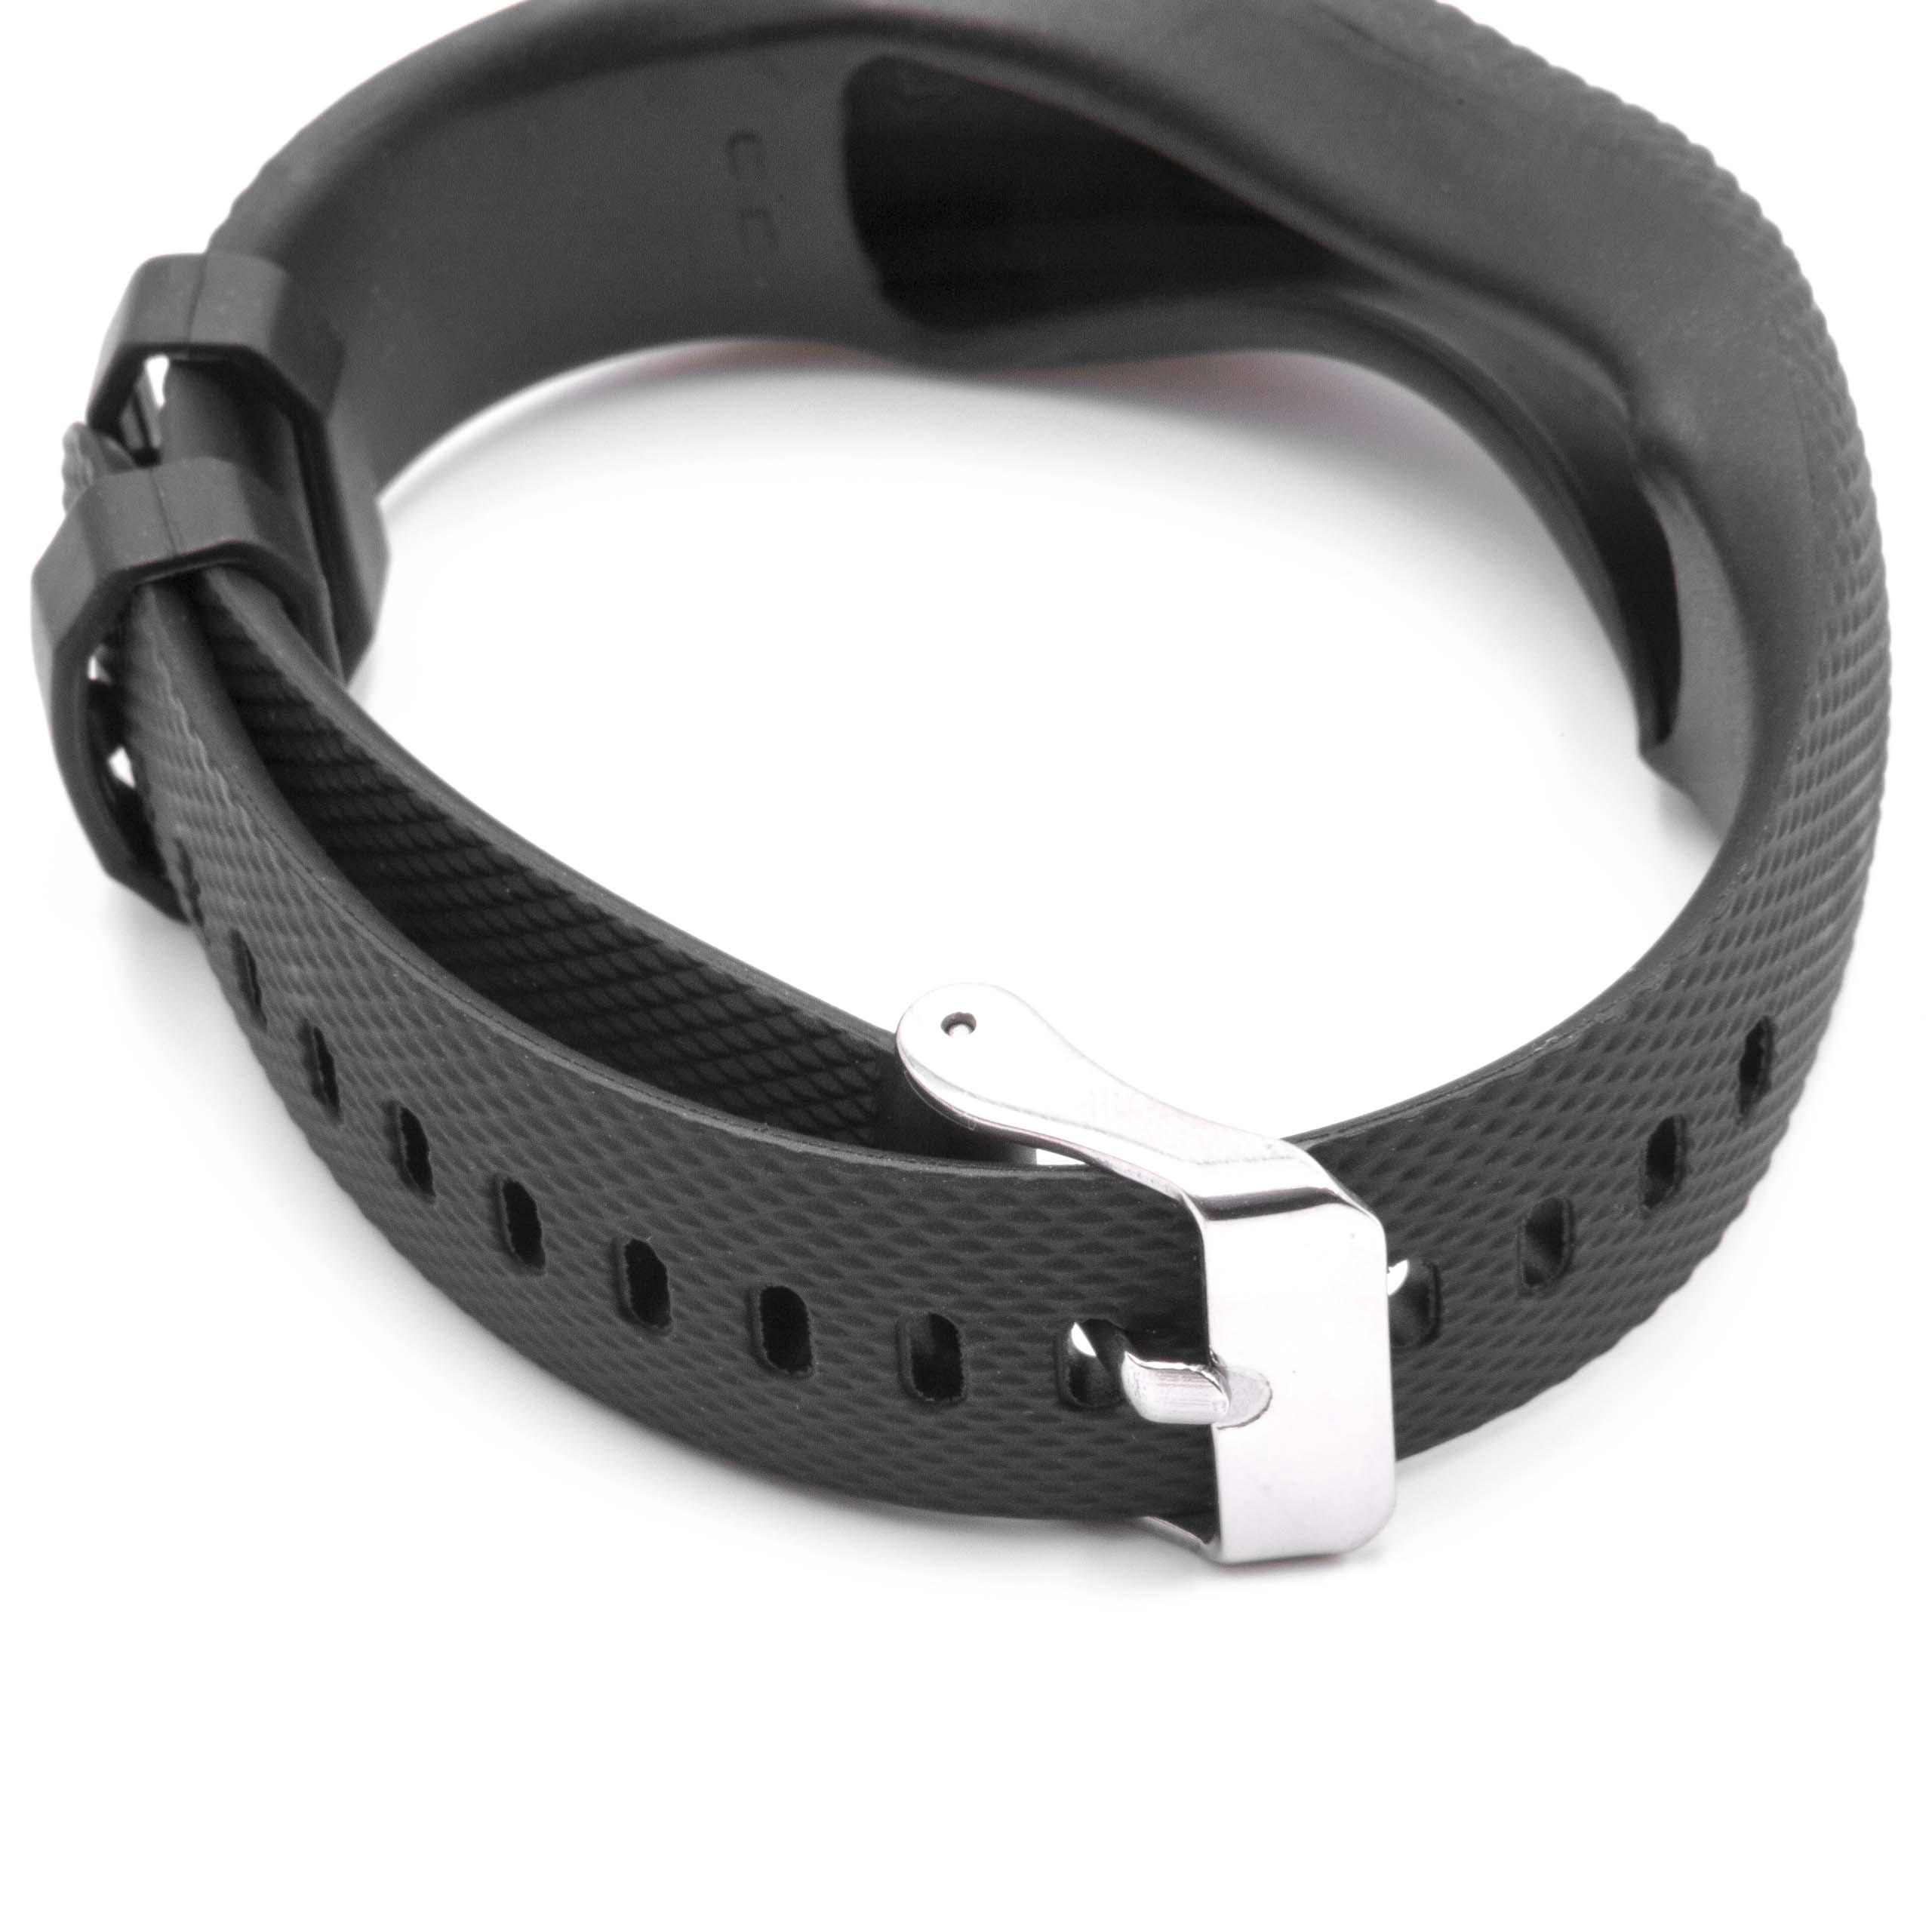 correa para Garmin Vivofit smartwatch - largo 24,5 cm, ancho 19,5 mm, negro